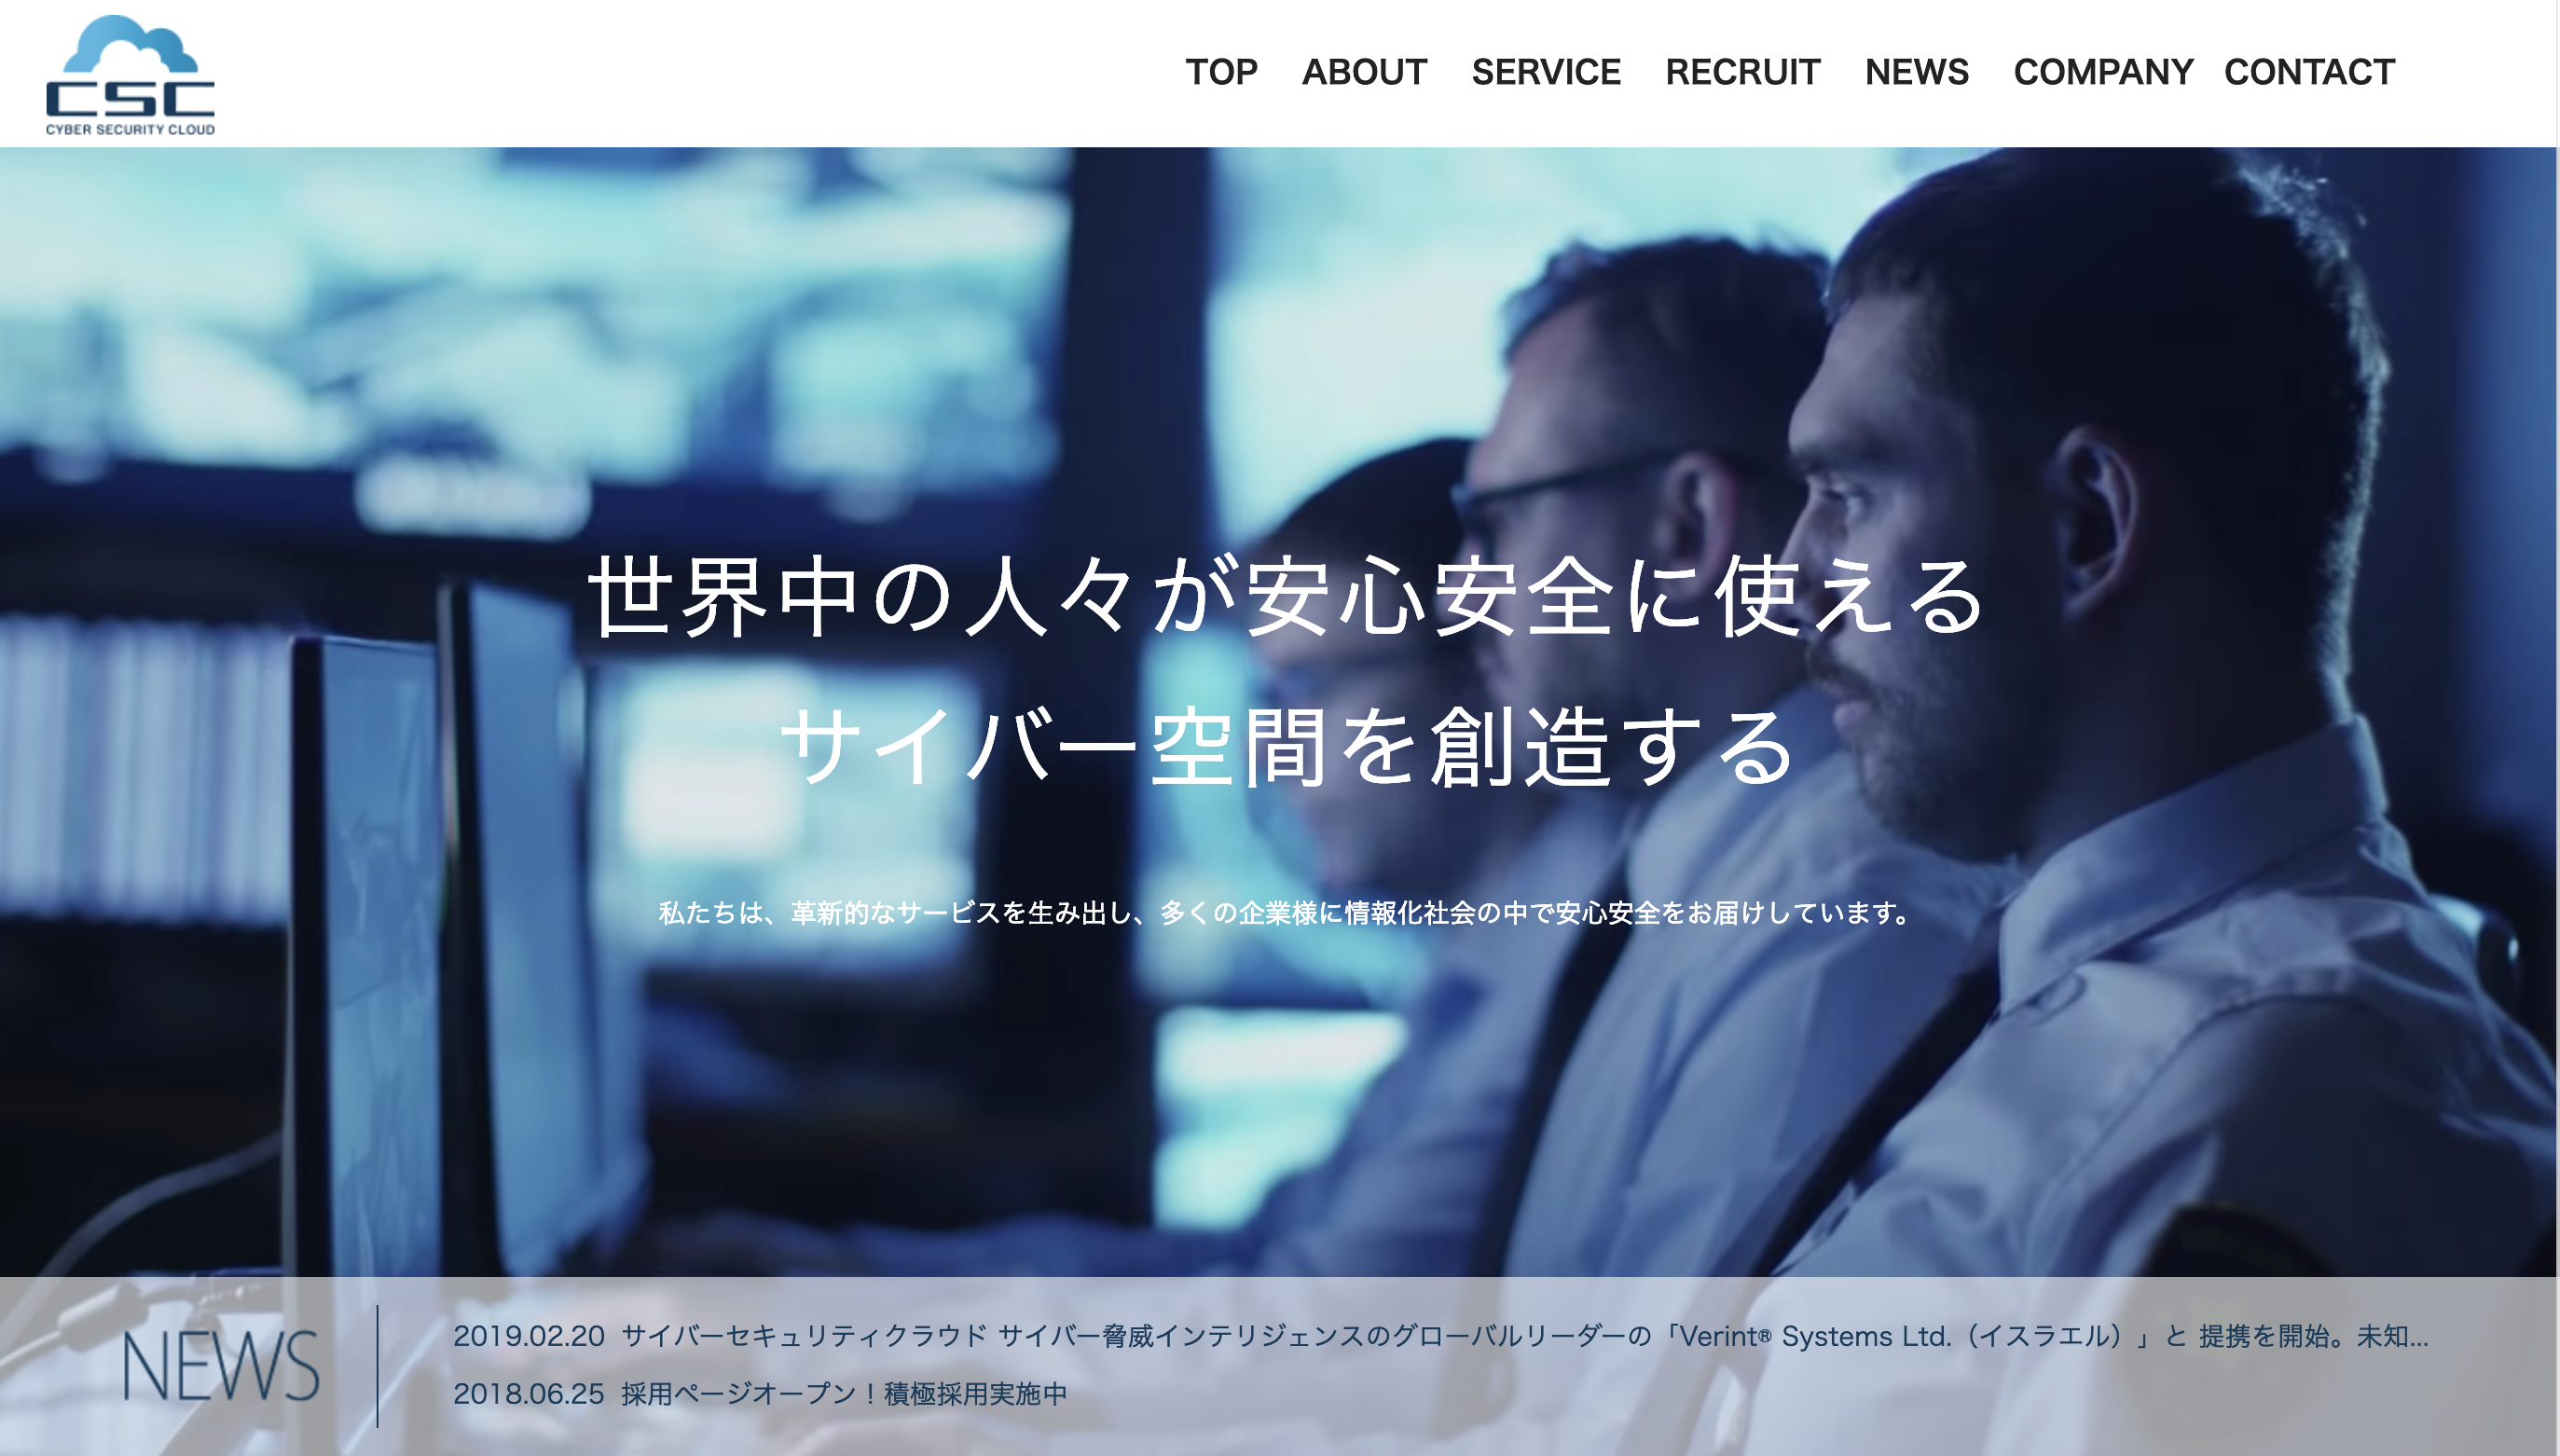 サイバーセキュリティクラウドがAWS WAFマネージドルールセラーに認定、日本スタートアップとしては初